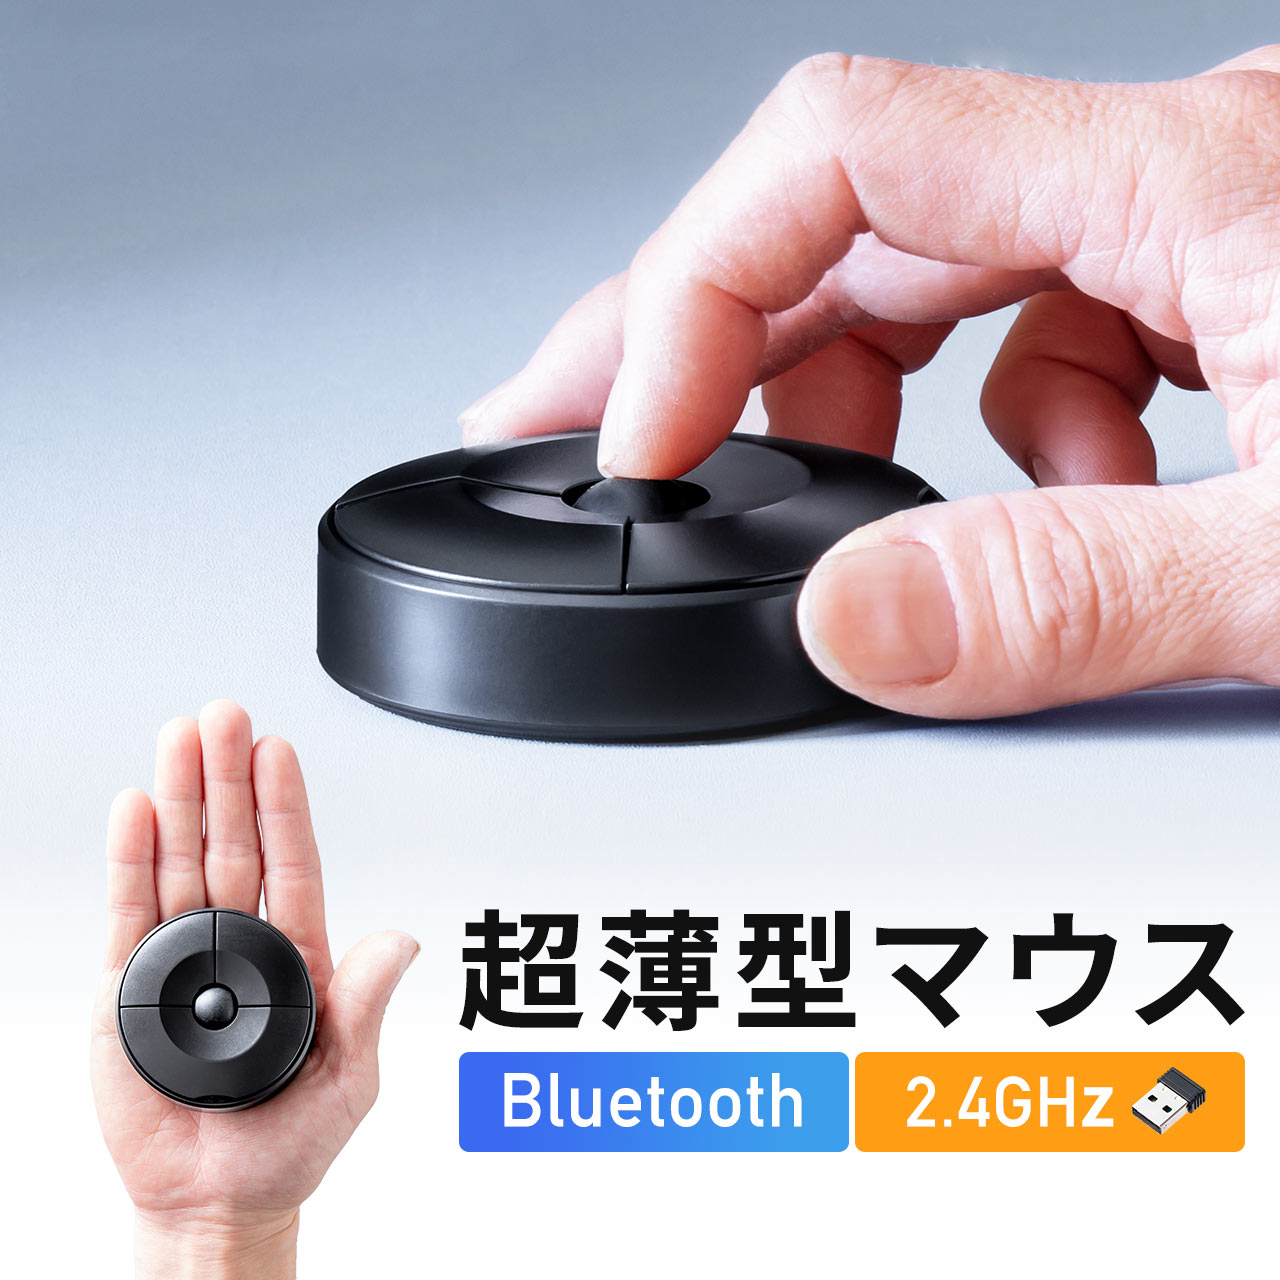 マウス Bluetoothマウス ワイヤレスマウス UFOマウス 円盤型 USB A 